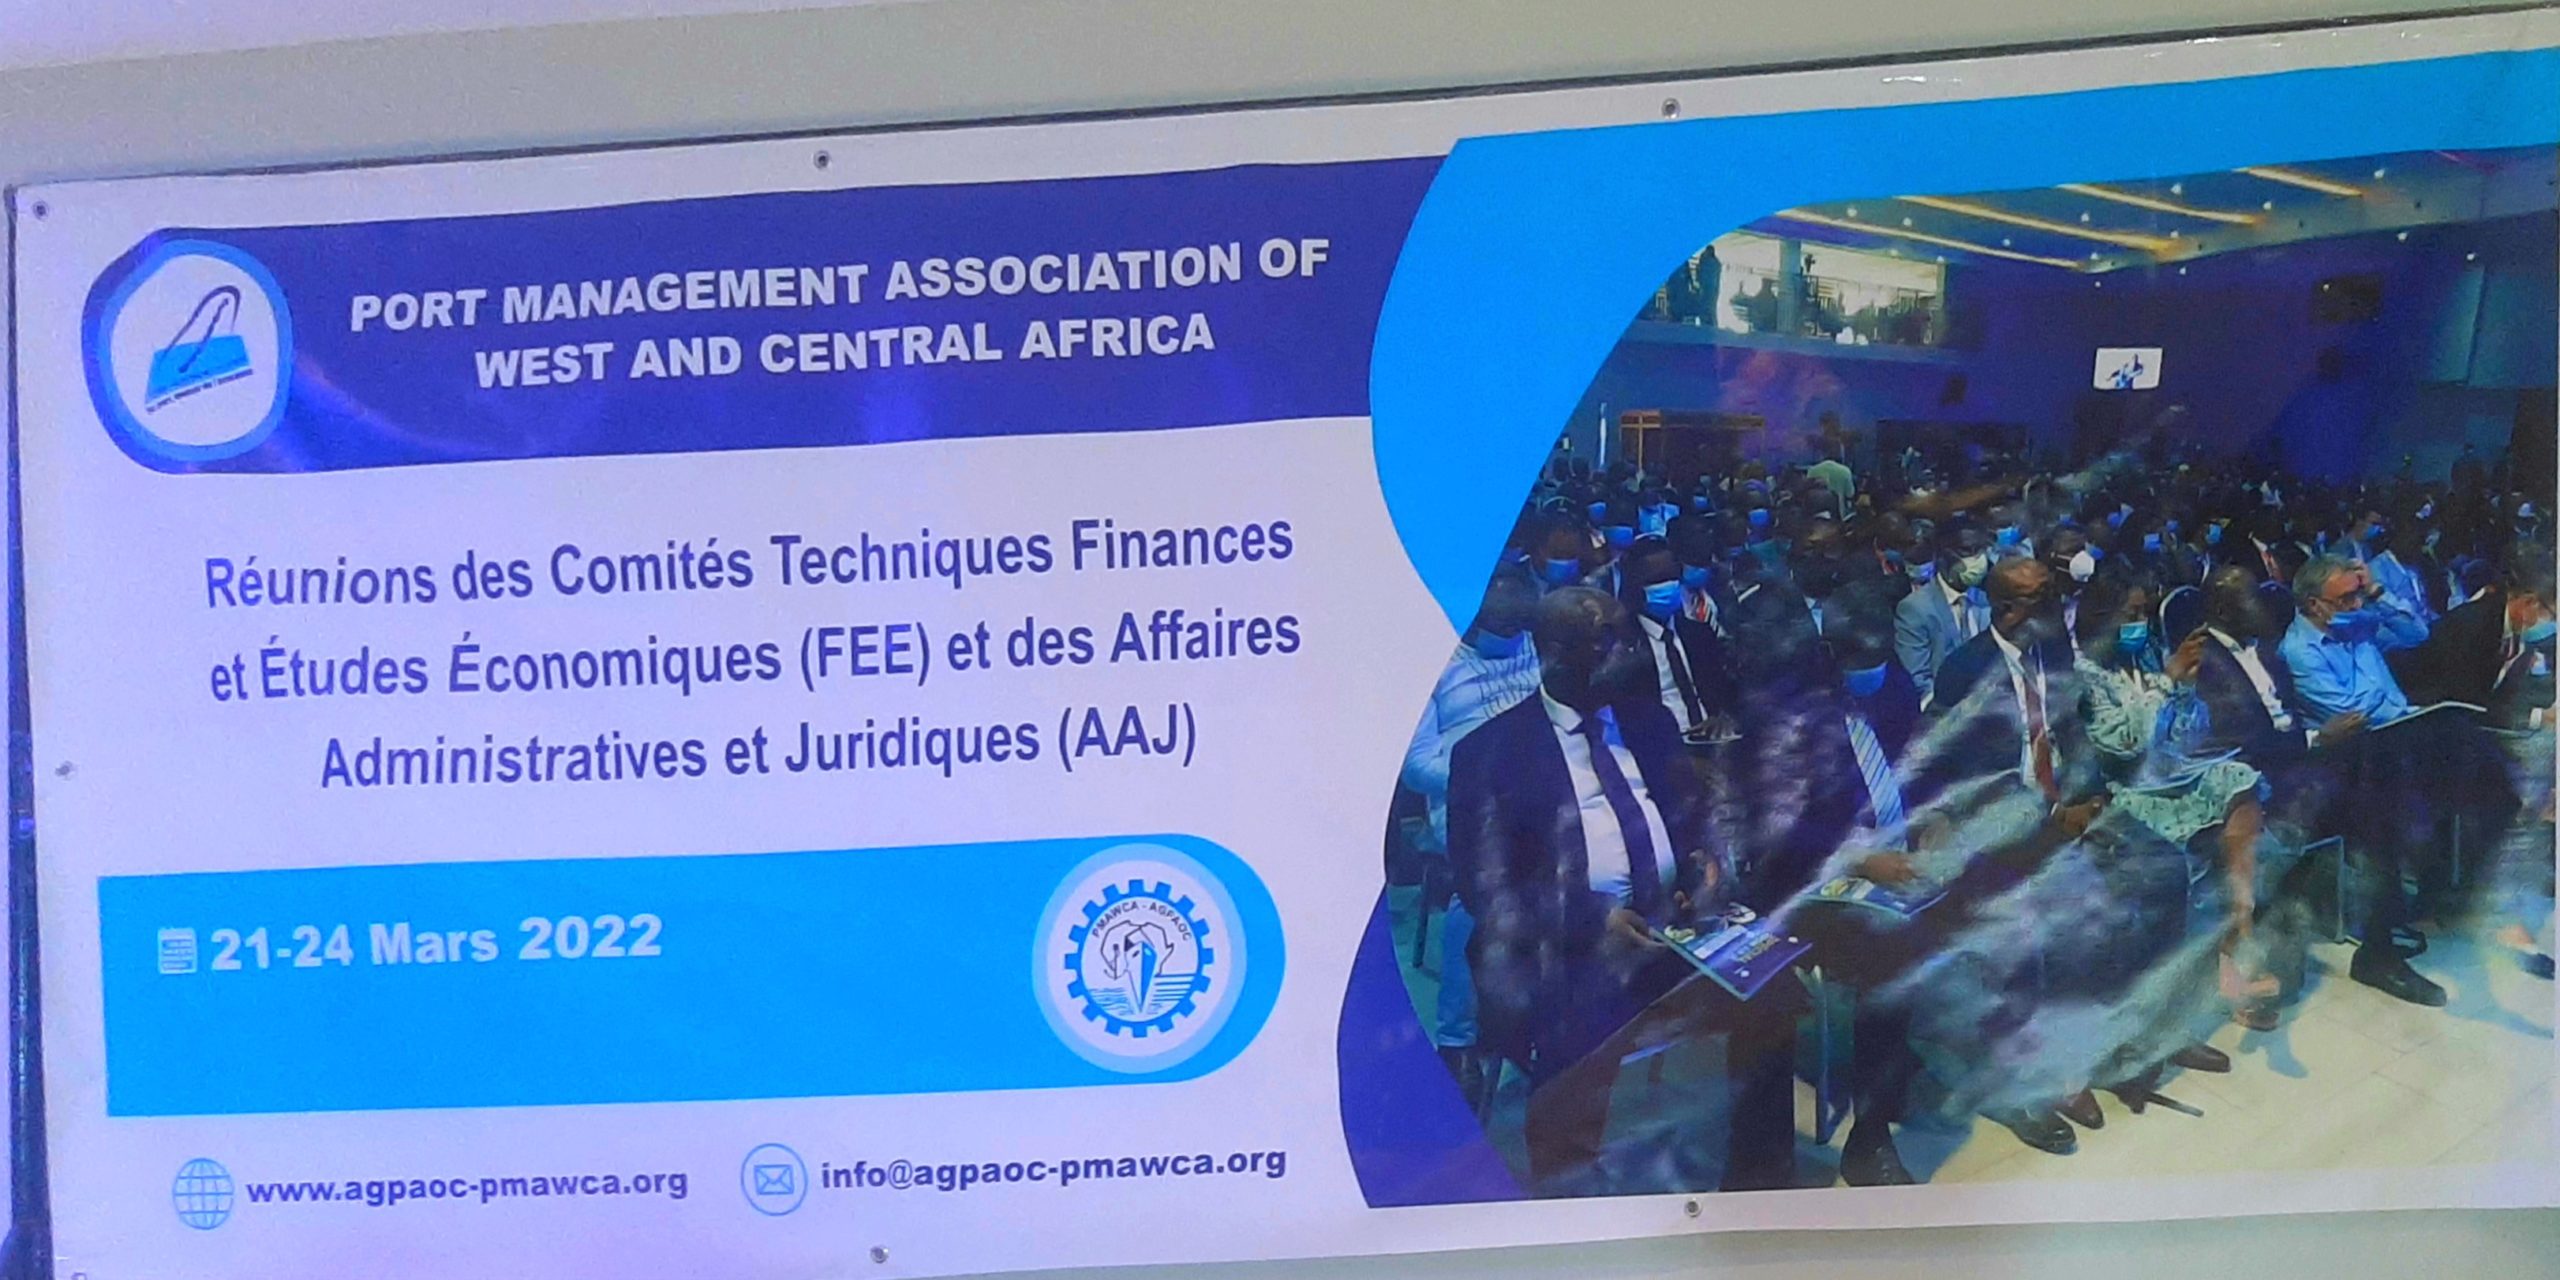 Économie : Réunion des comités techniques de l’Association des ports de l’Afrique de l’ouest et du centre,Dakar à l’honneur